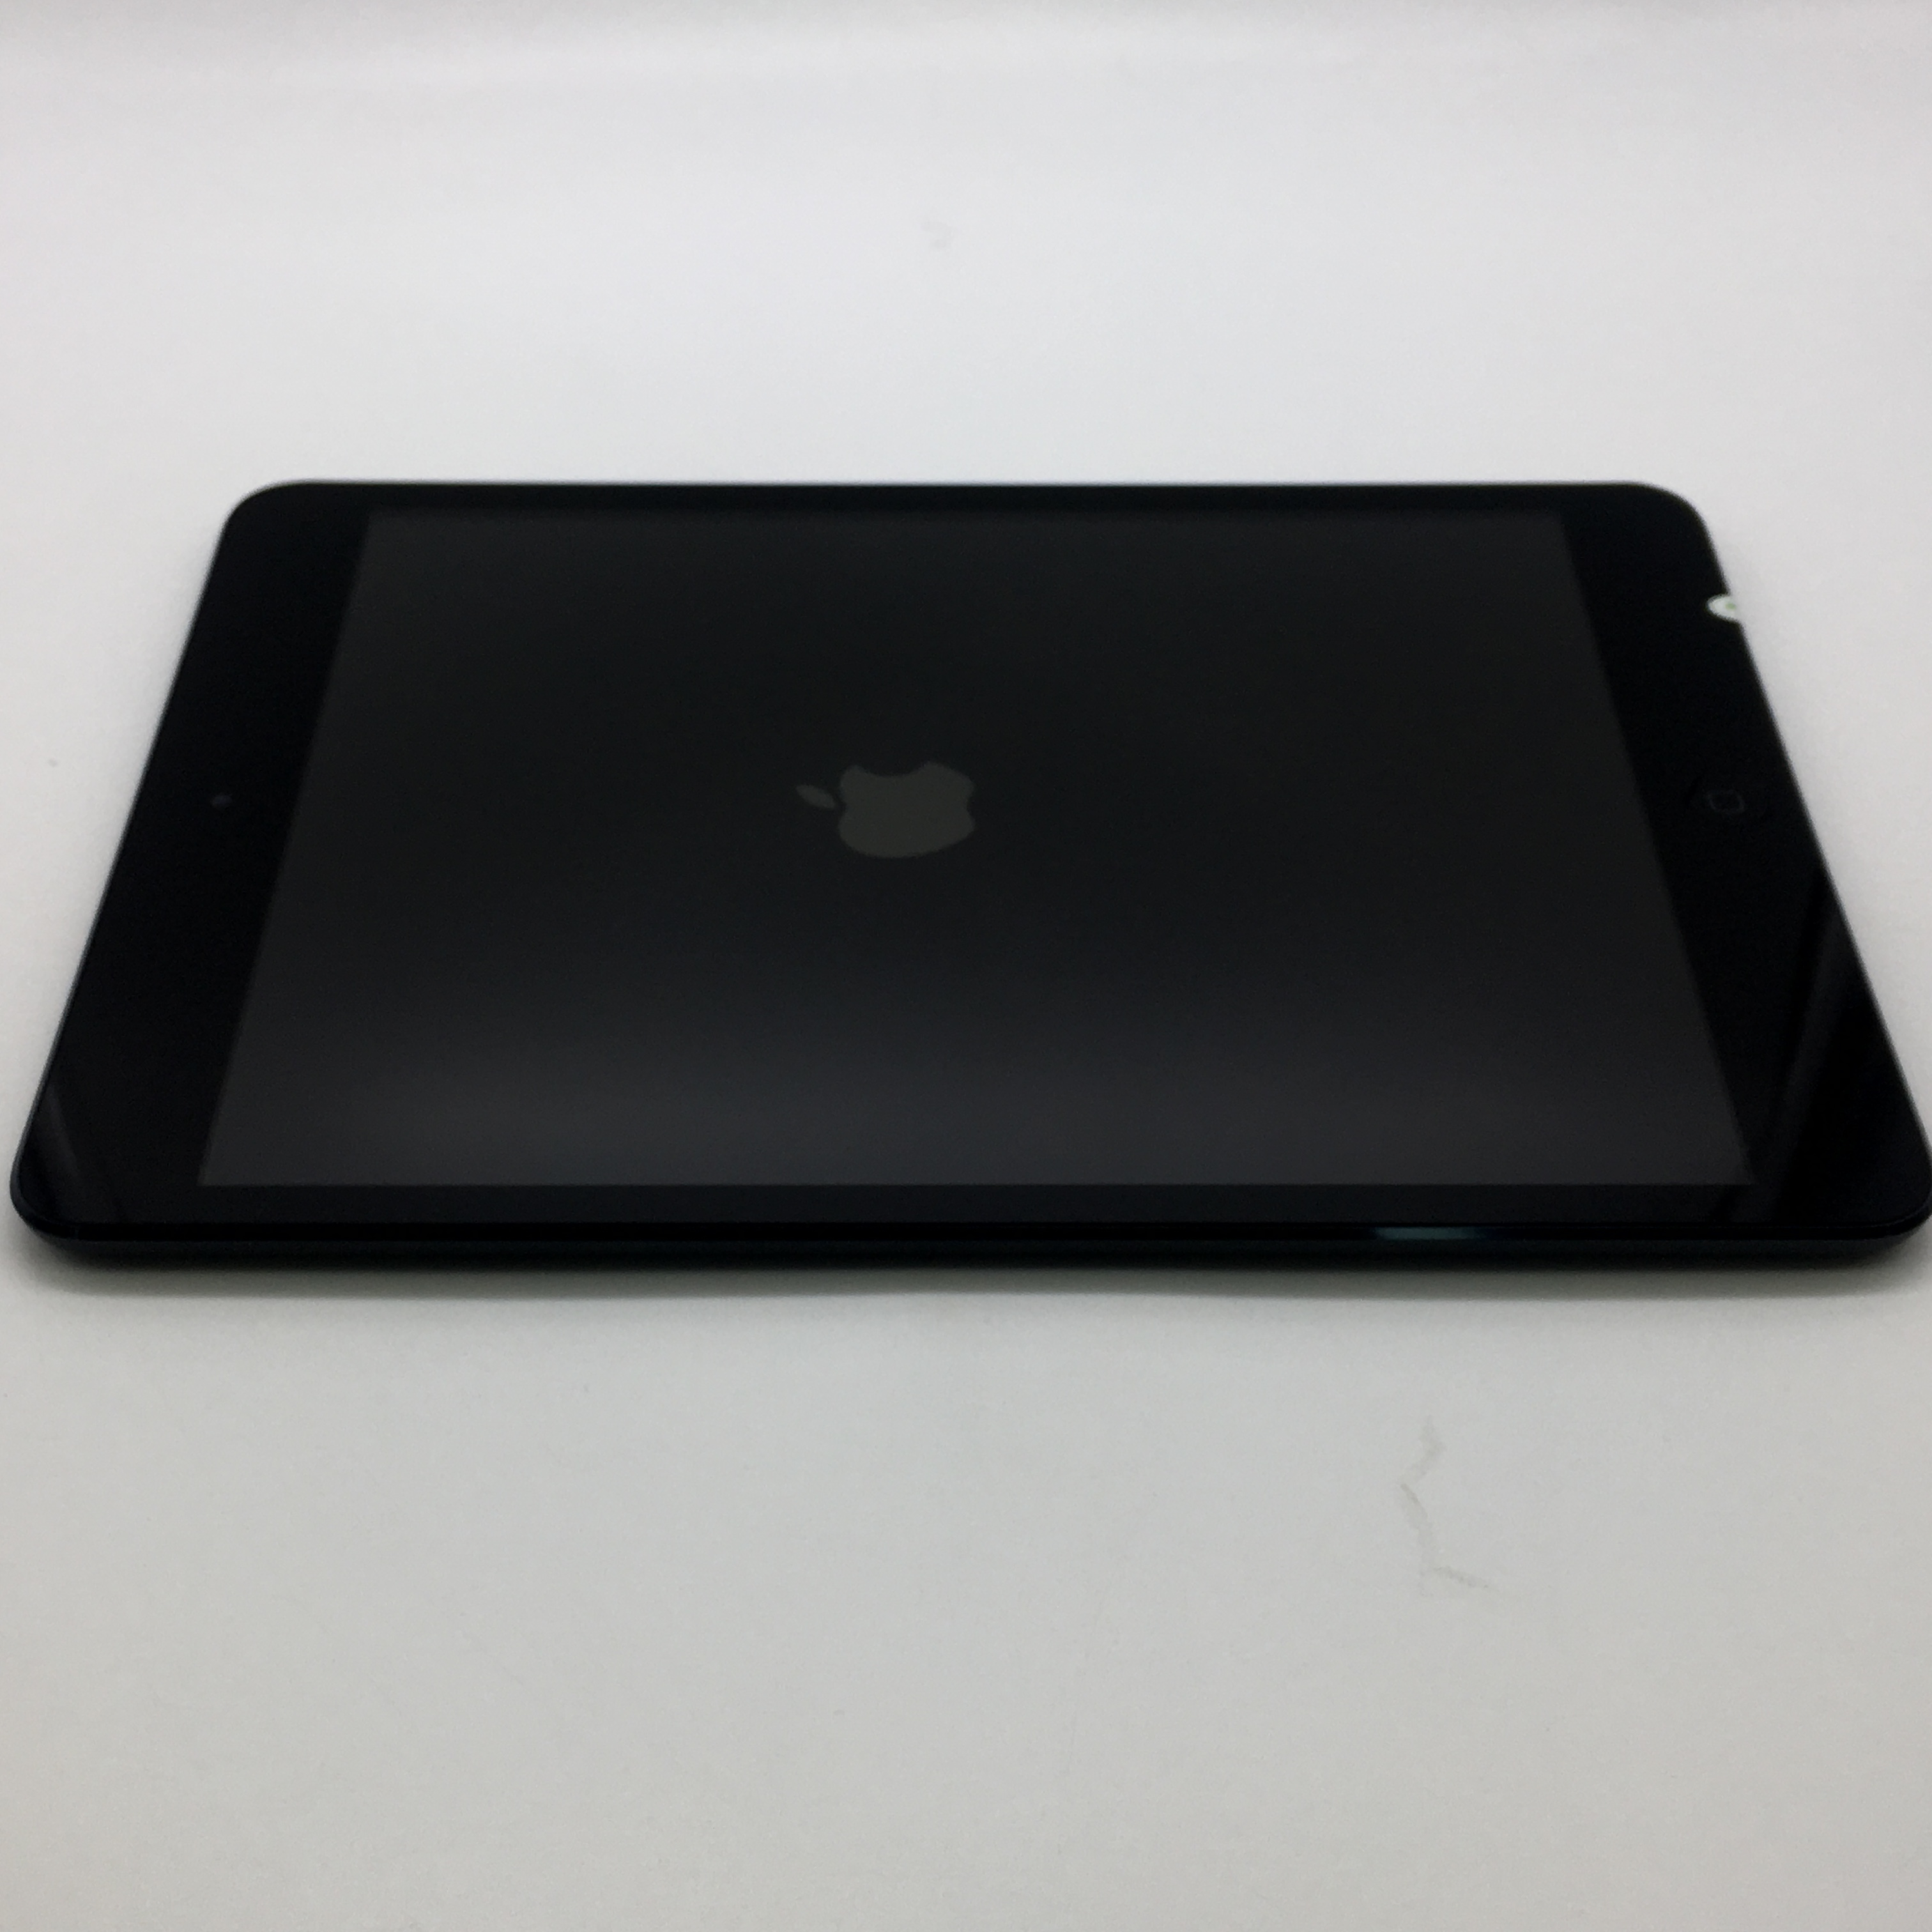 苹果【ipad mini】黑色 16 g wifi版 国行 8成新